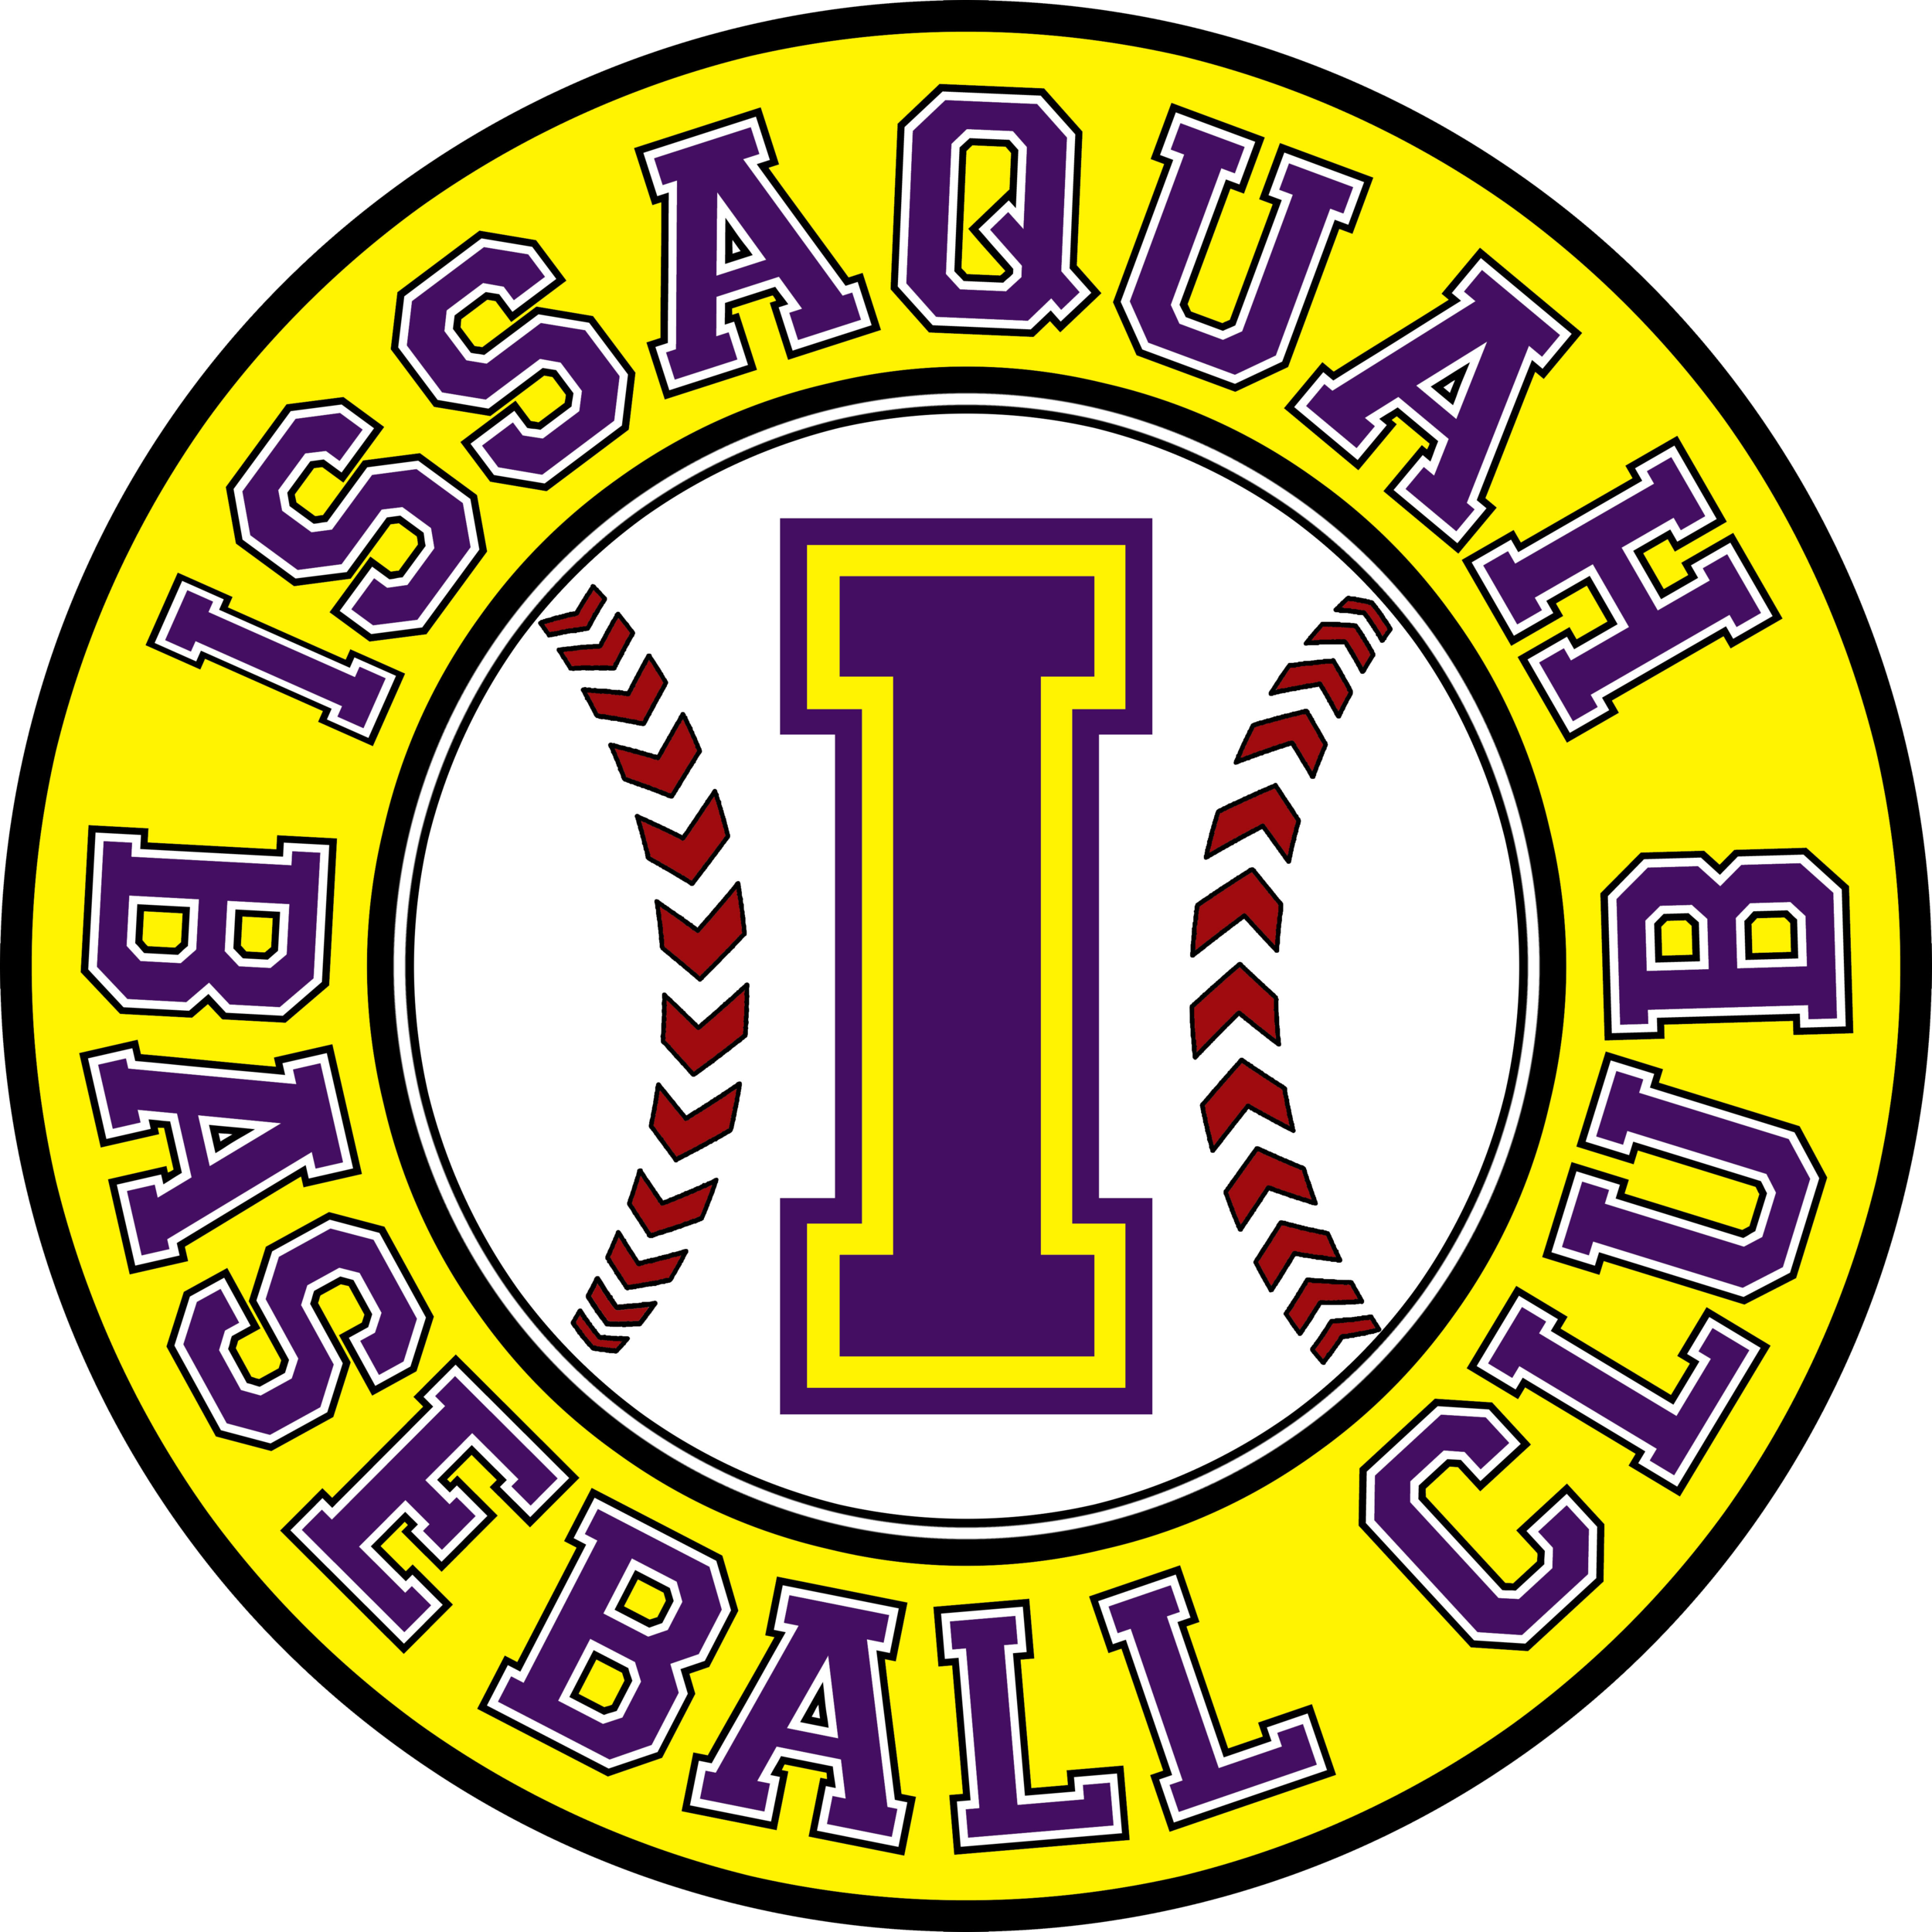 Issaquah Baseball Club